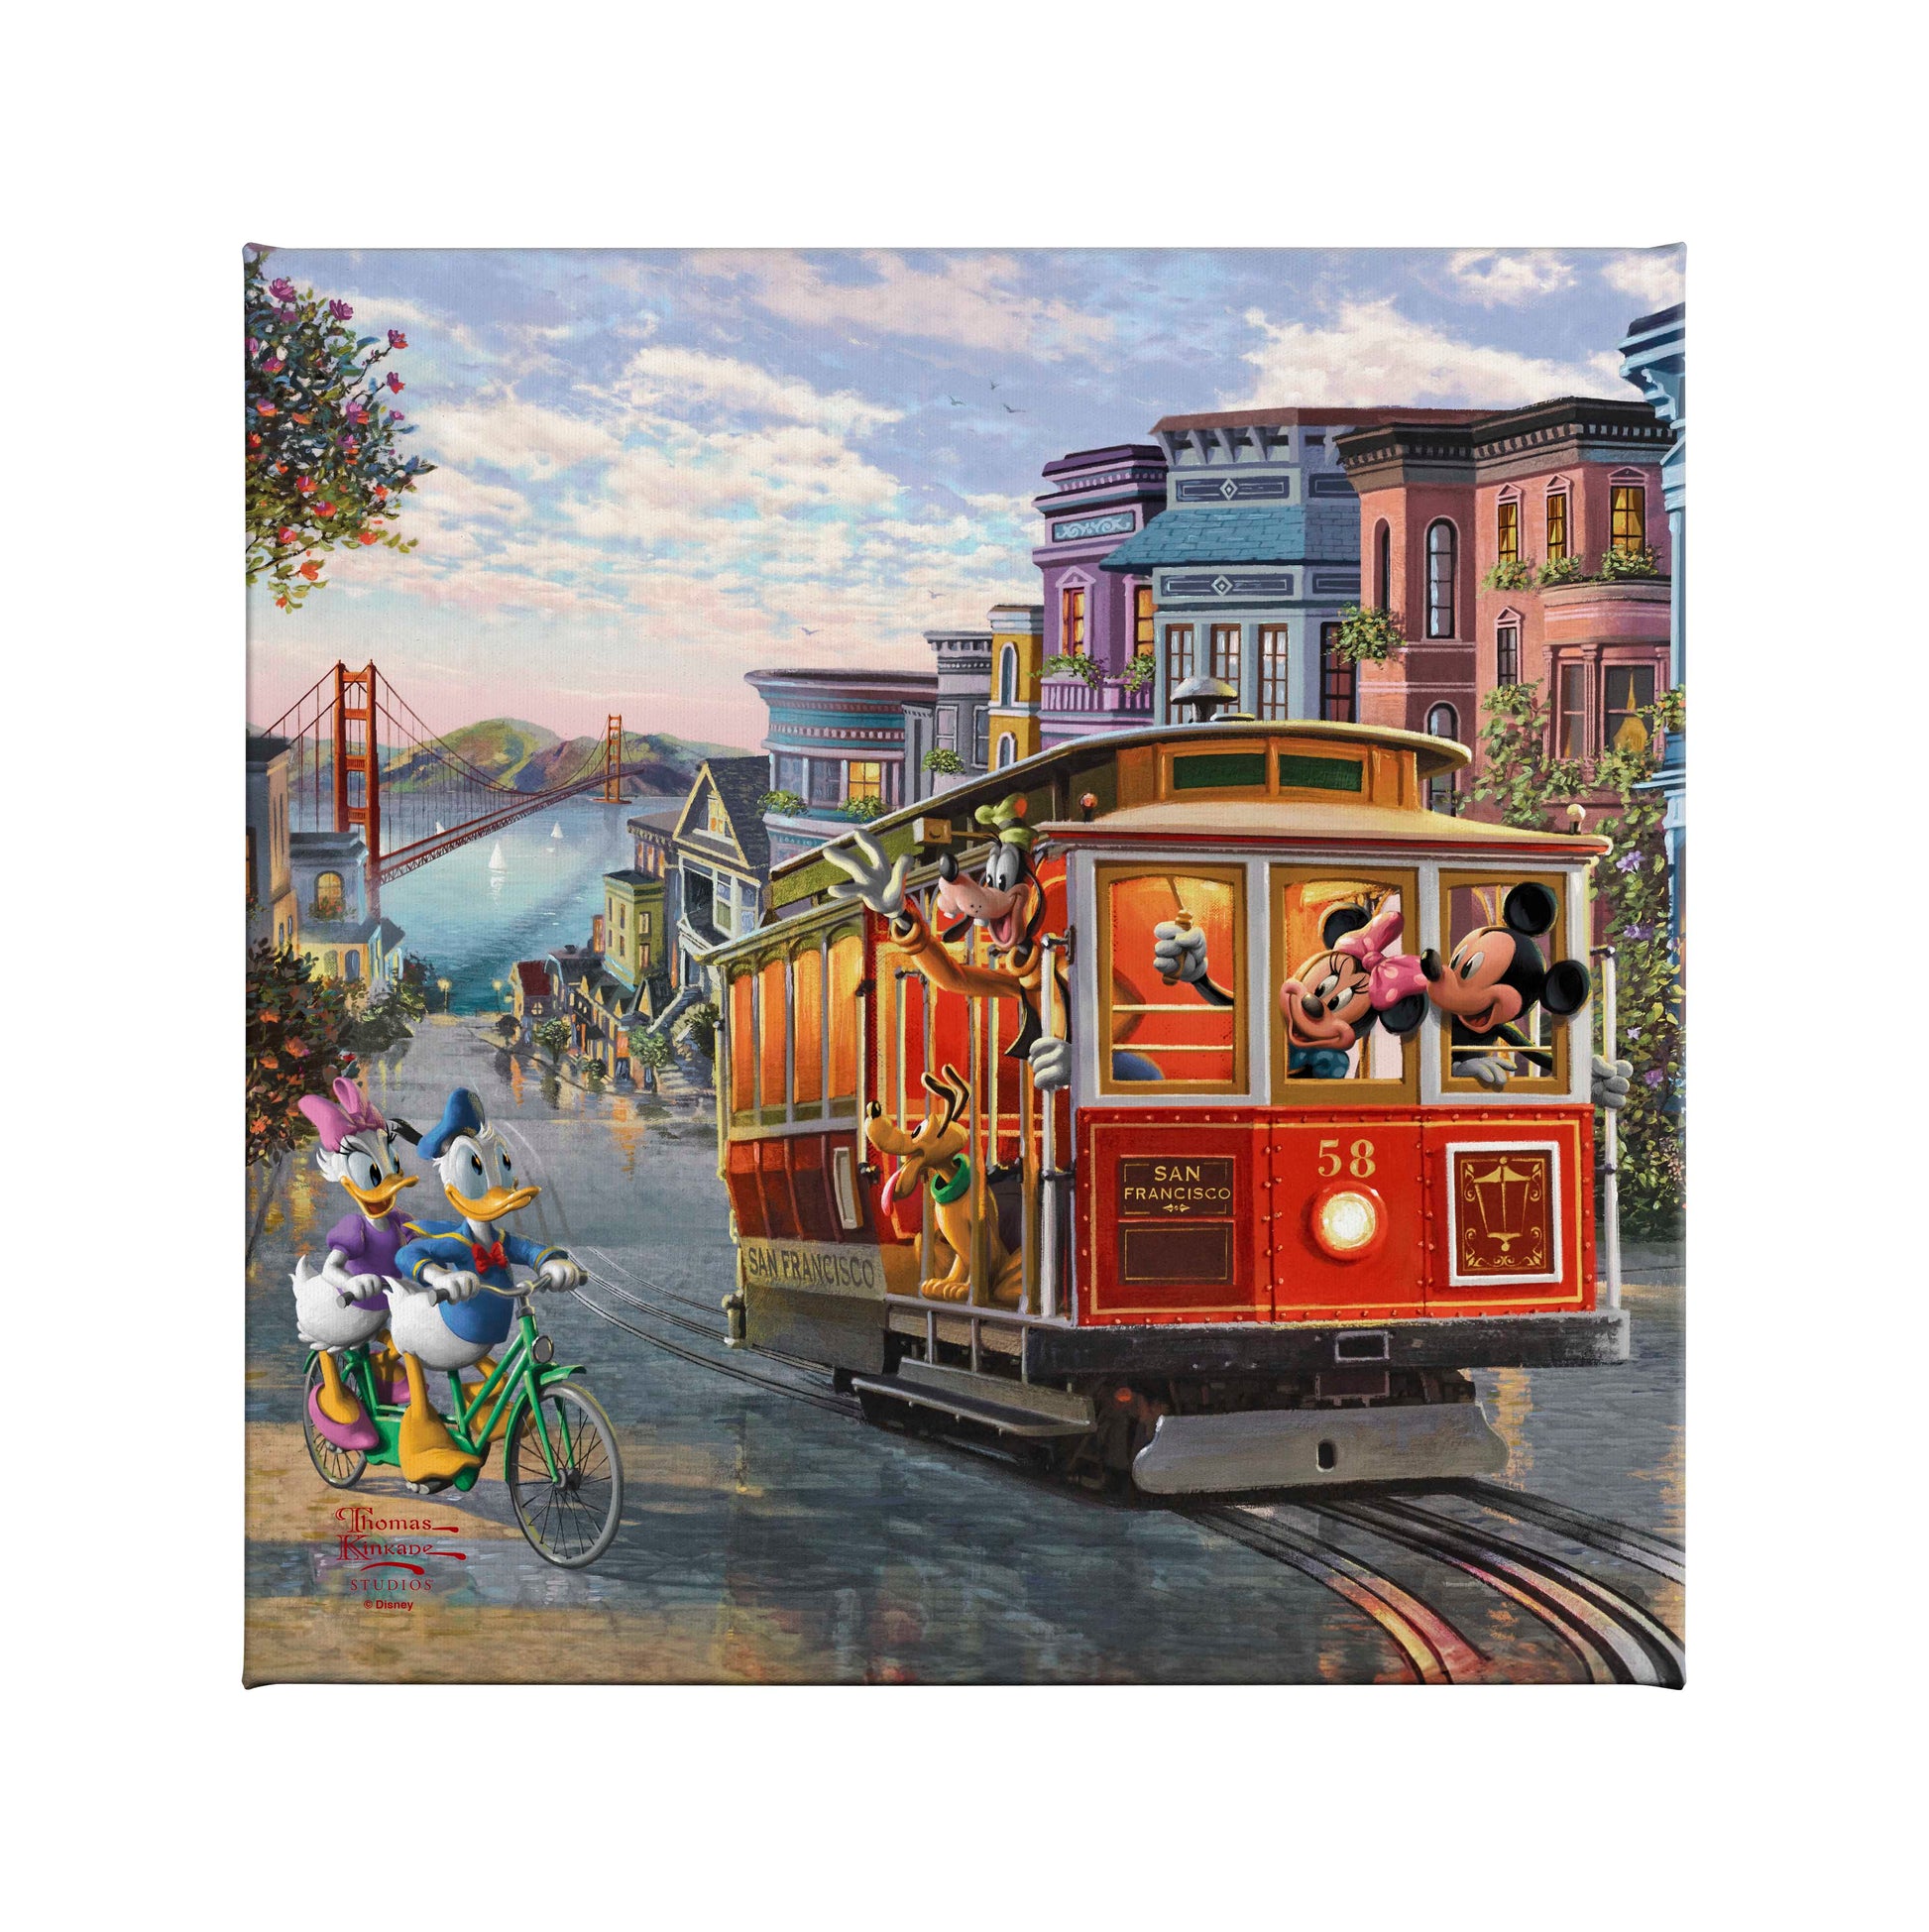 165601_Disney Mickey and Minnie in San Francisco _14x14_CGW_Mocked F.jpg